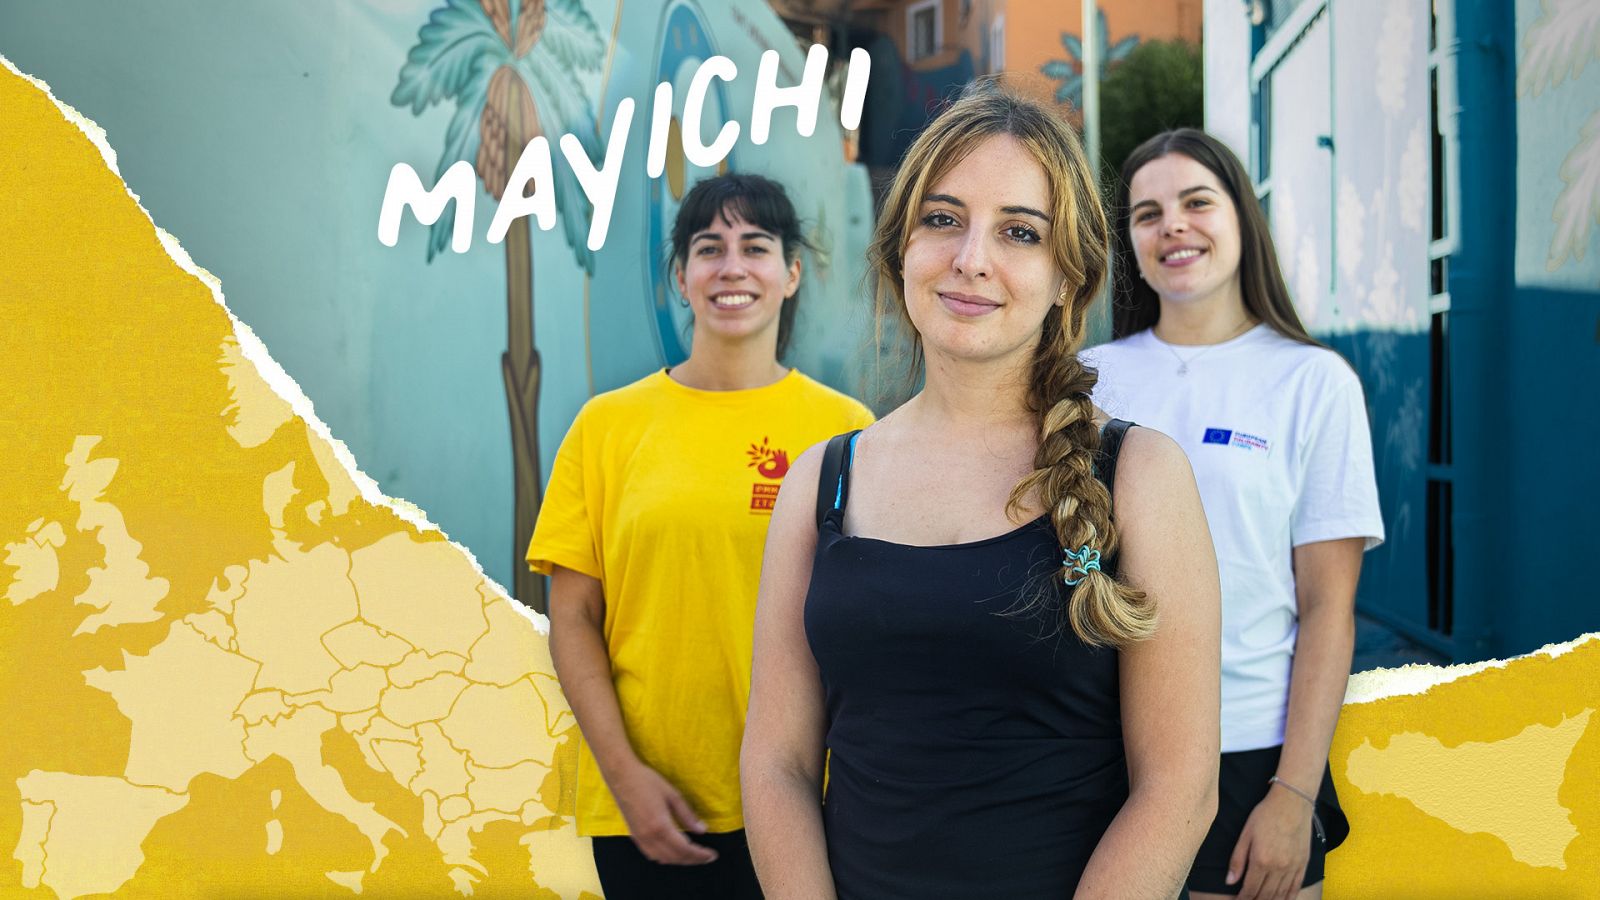 (IN)Voluntarios - Programa 3 - Mayichi en Palermo | Ver ahora